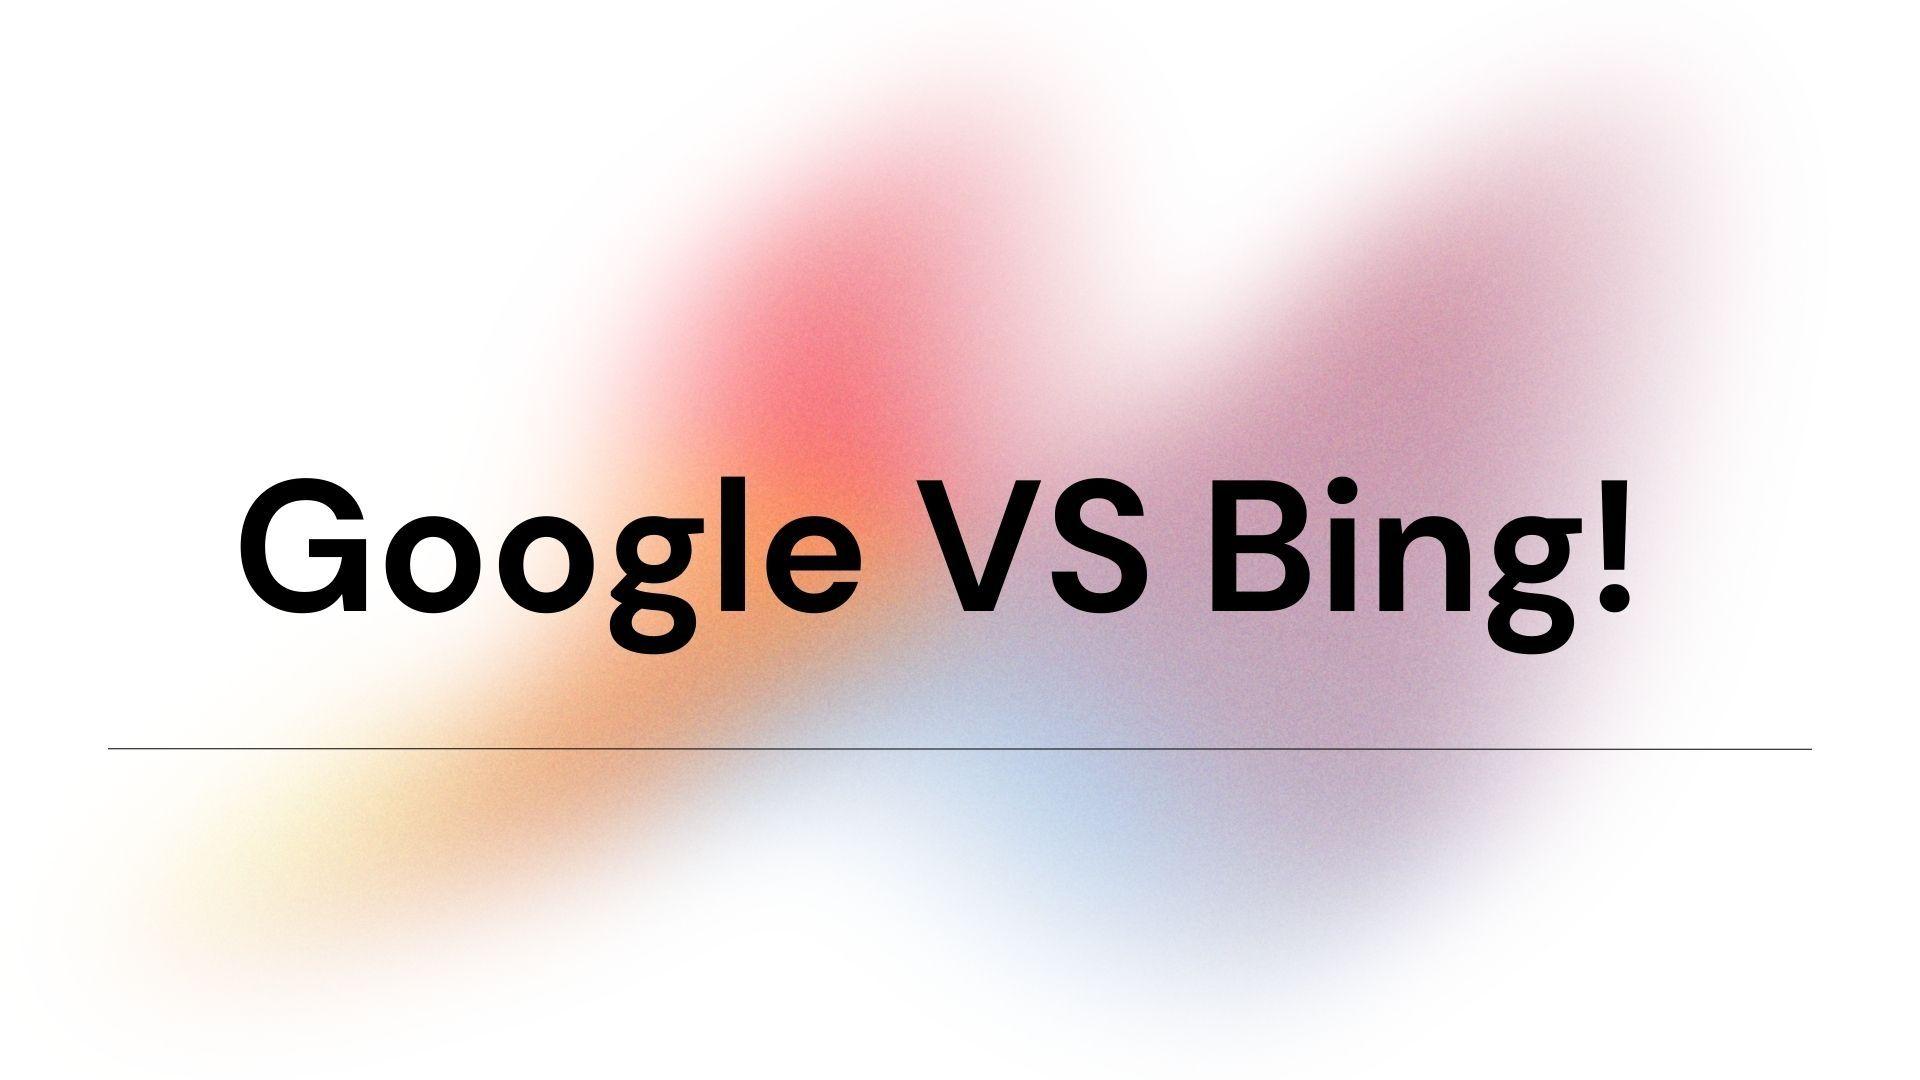 google-vs-bing